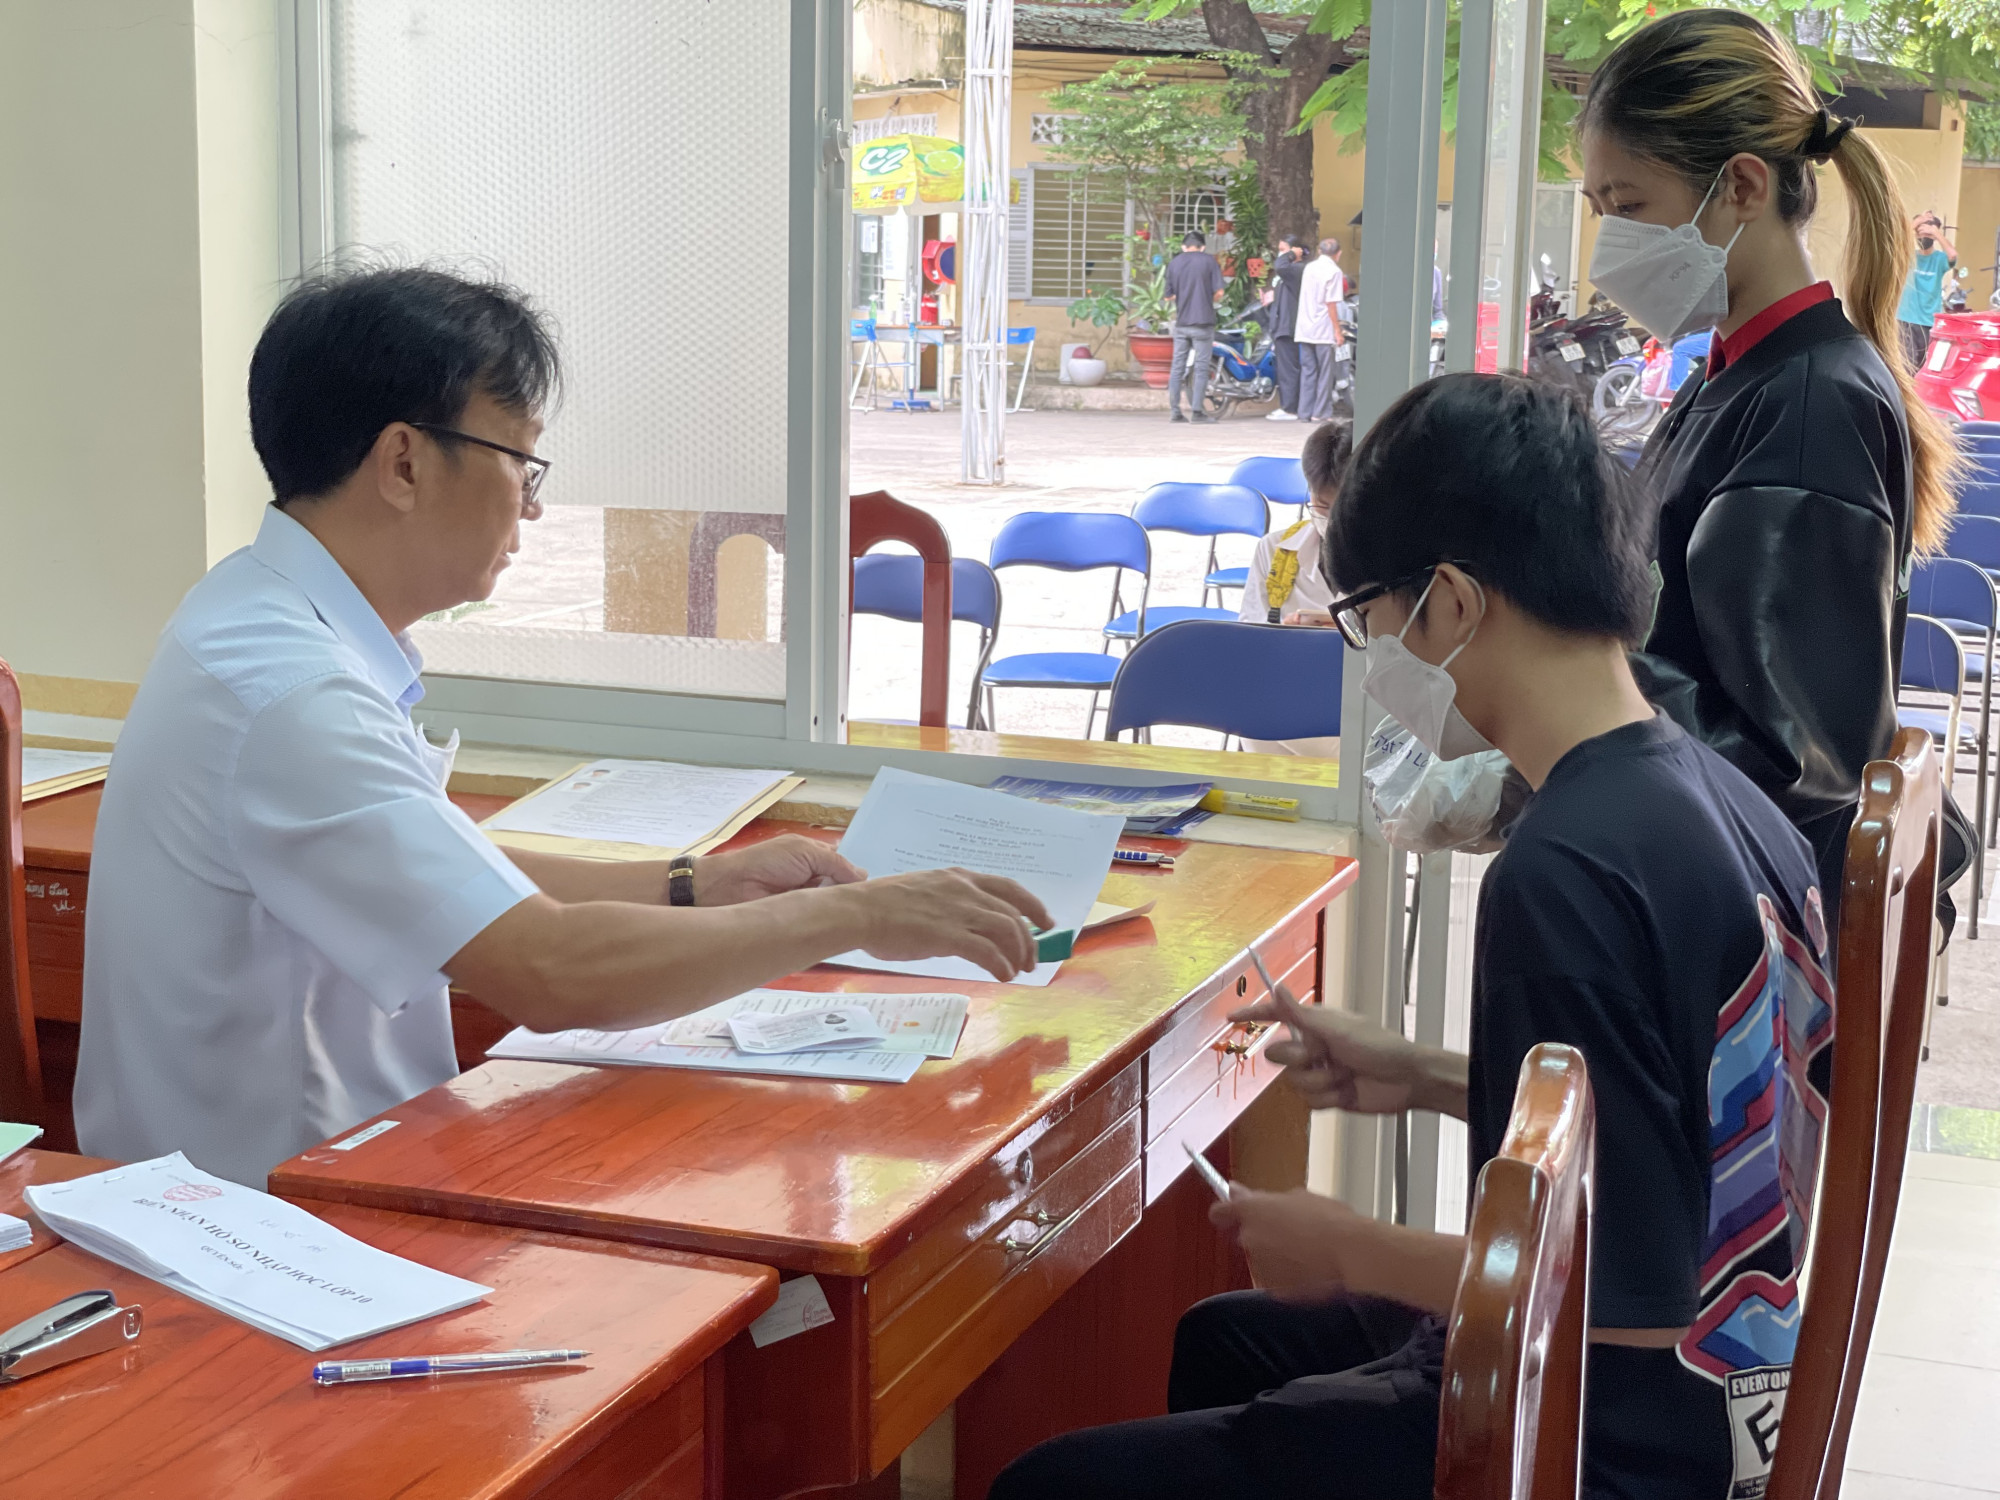 Phó giám đốc Sở GD-ĐT TPHCM Nguyễn Bảo Quốc cho rằng các trường cần chủ động xây dựng tổ hợp để có sự chủ động trong năm học mới